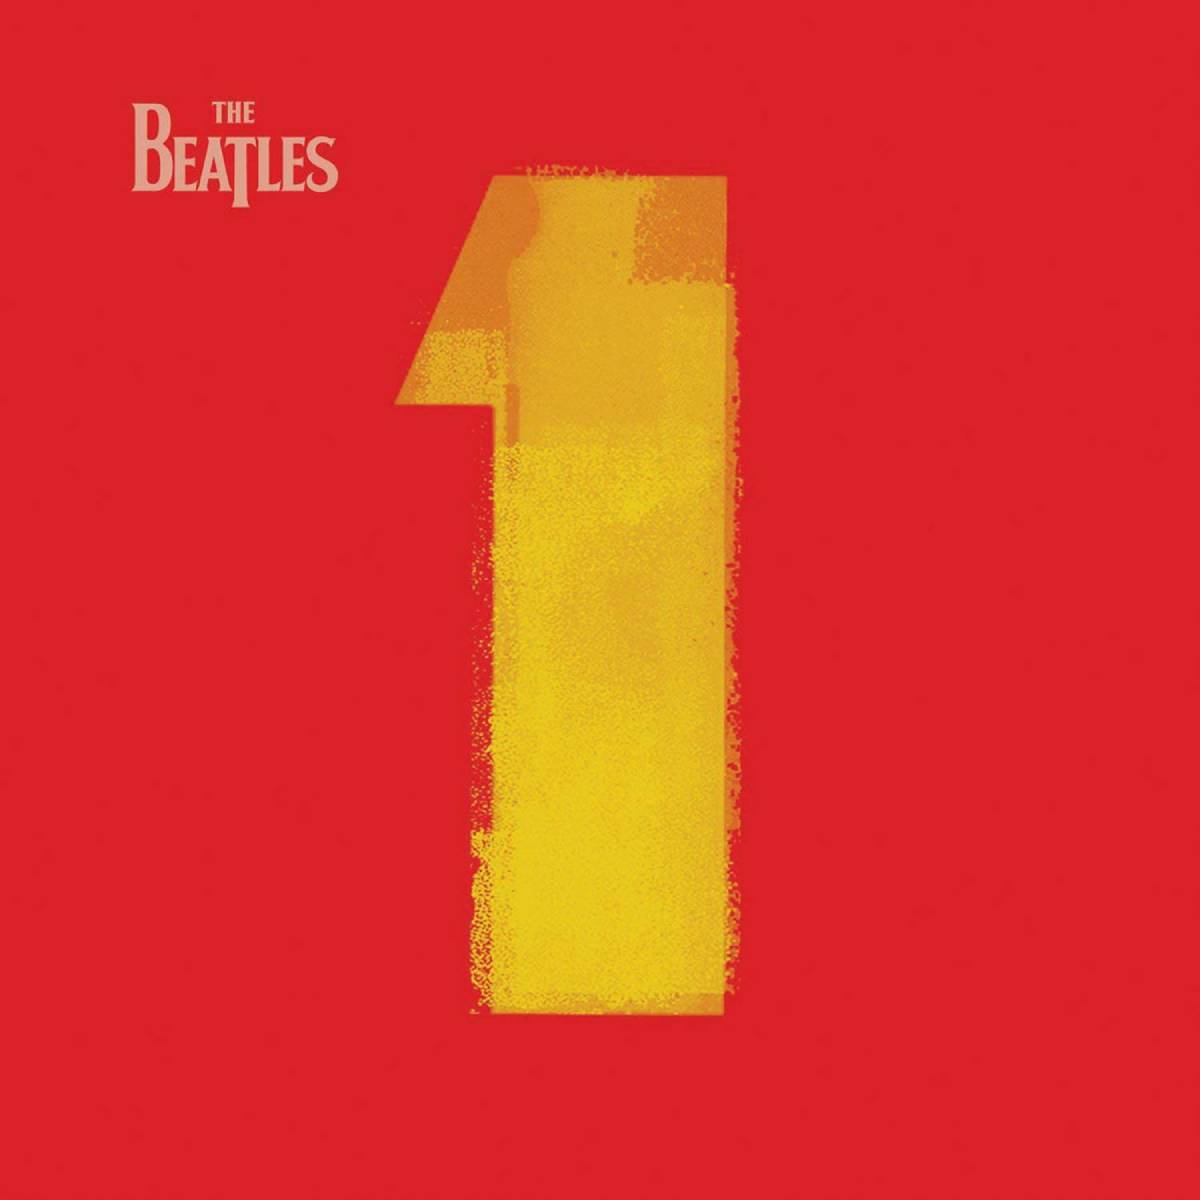 Capa da compilação dos Beatles intitulada "1".